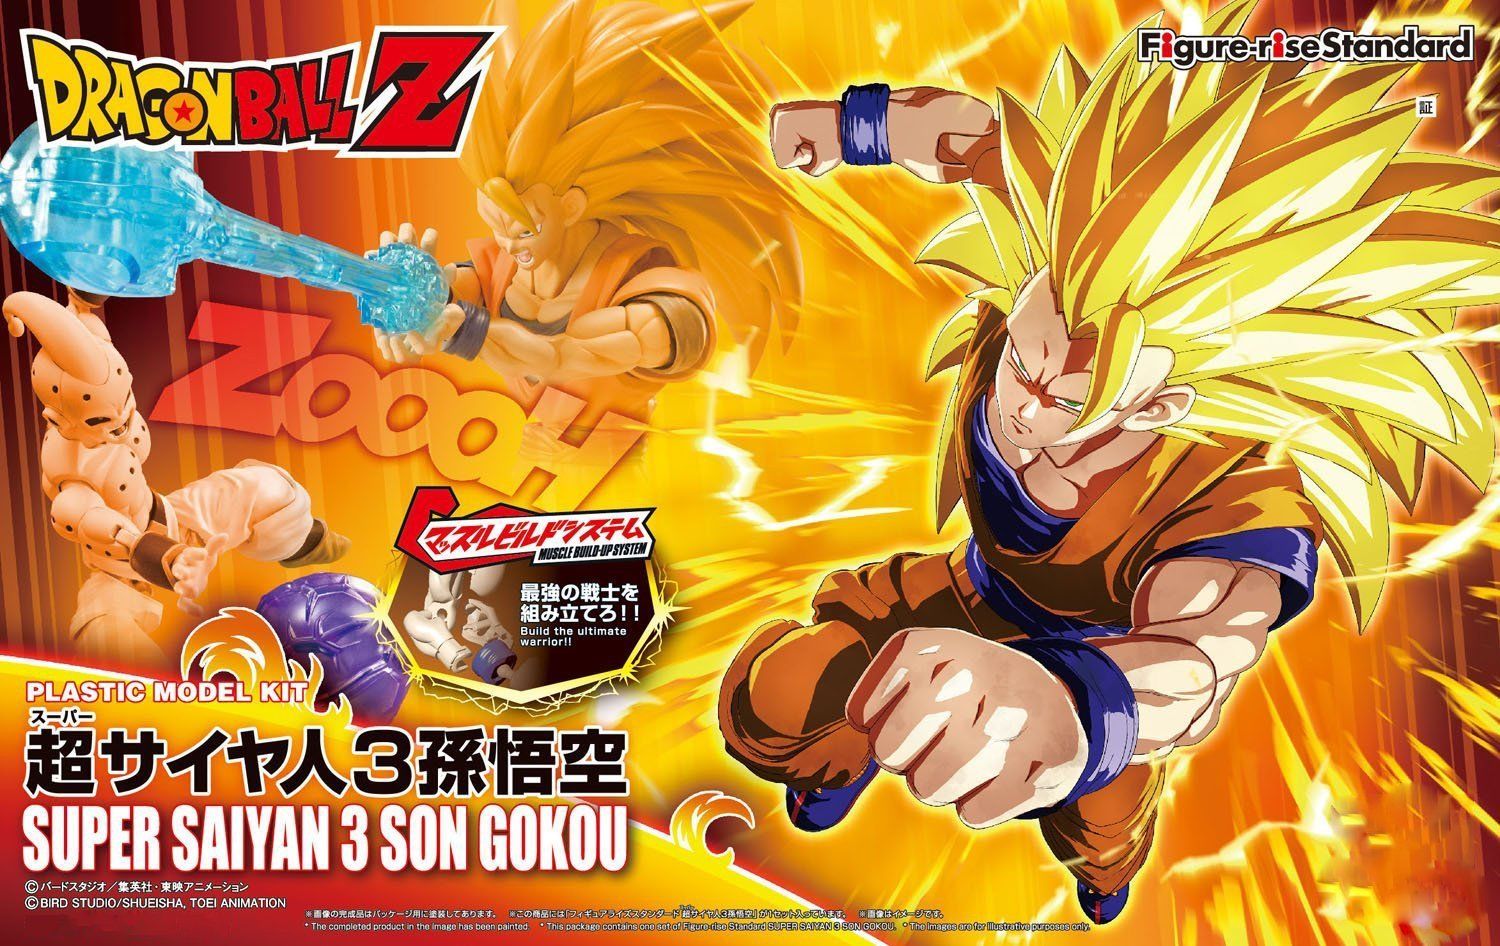 Figure-rise Standard - Super Saiyan 3 Son Goku